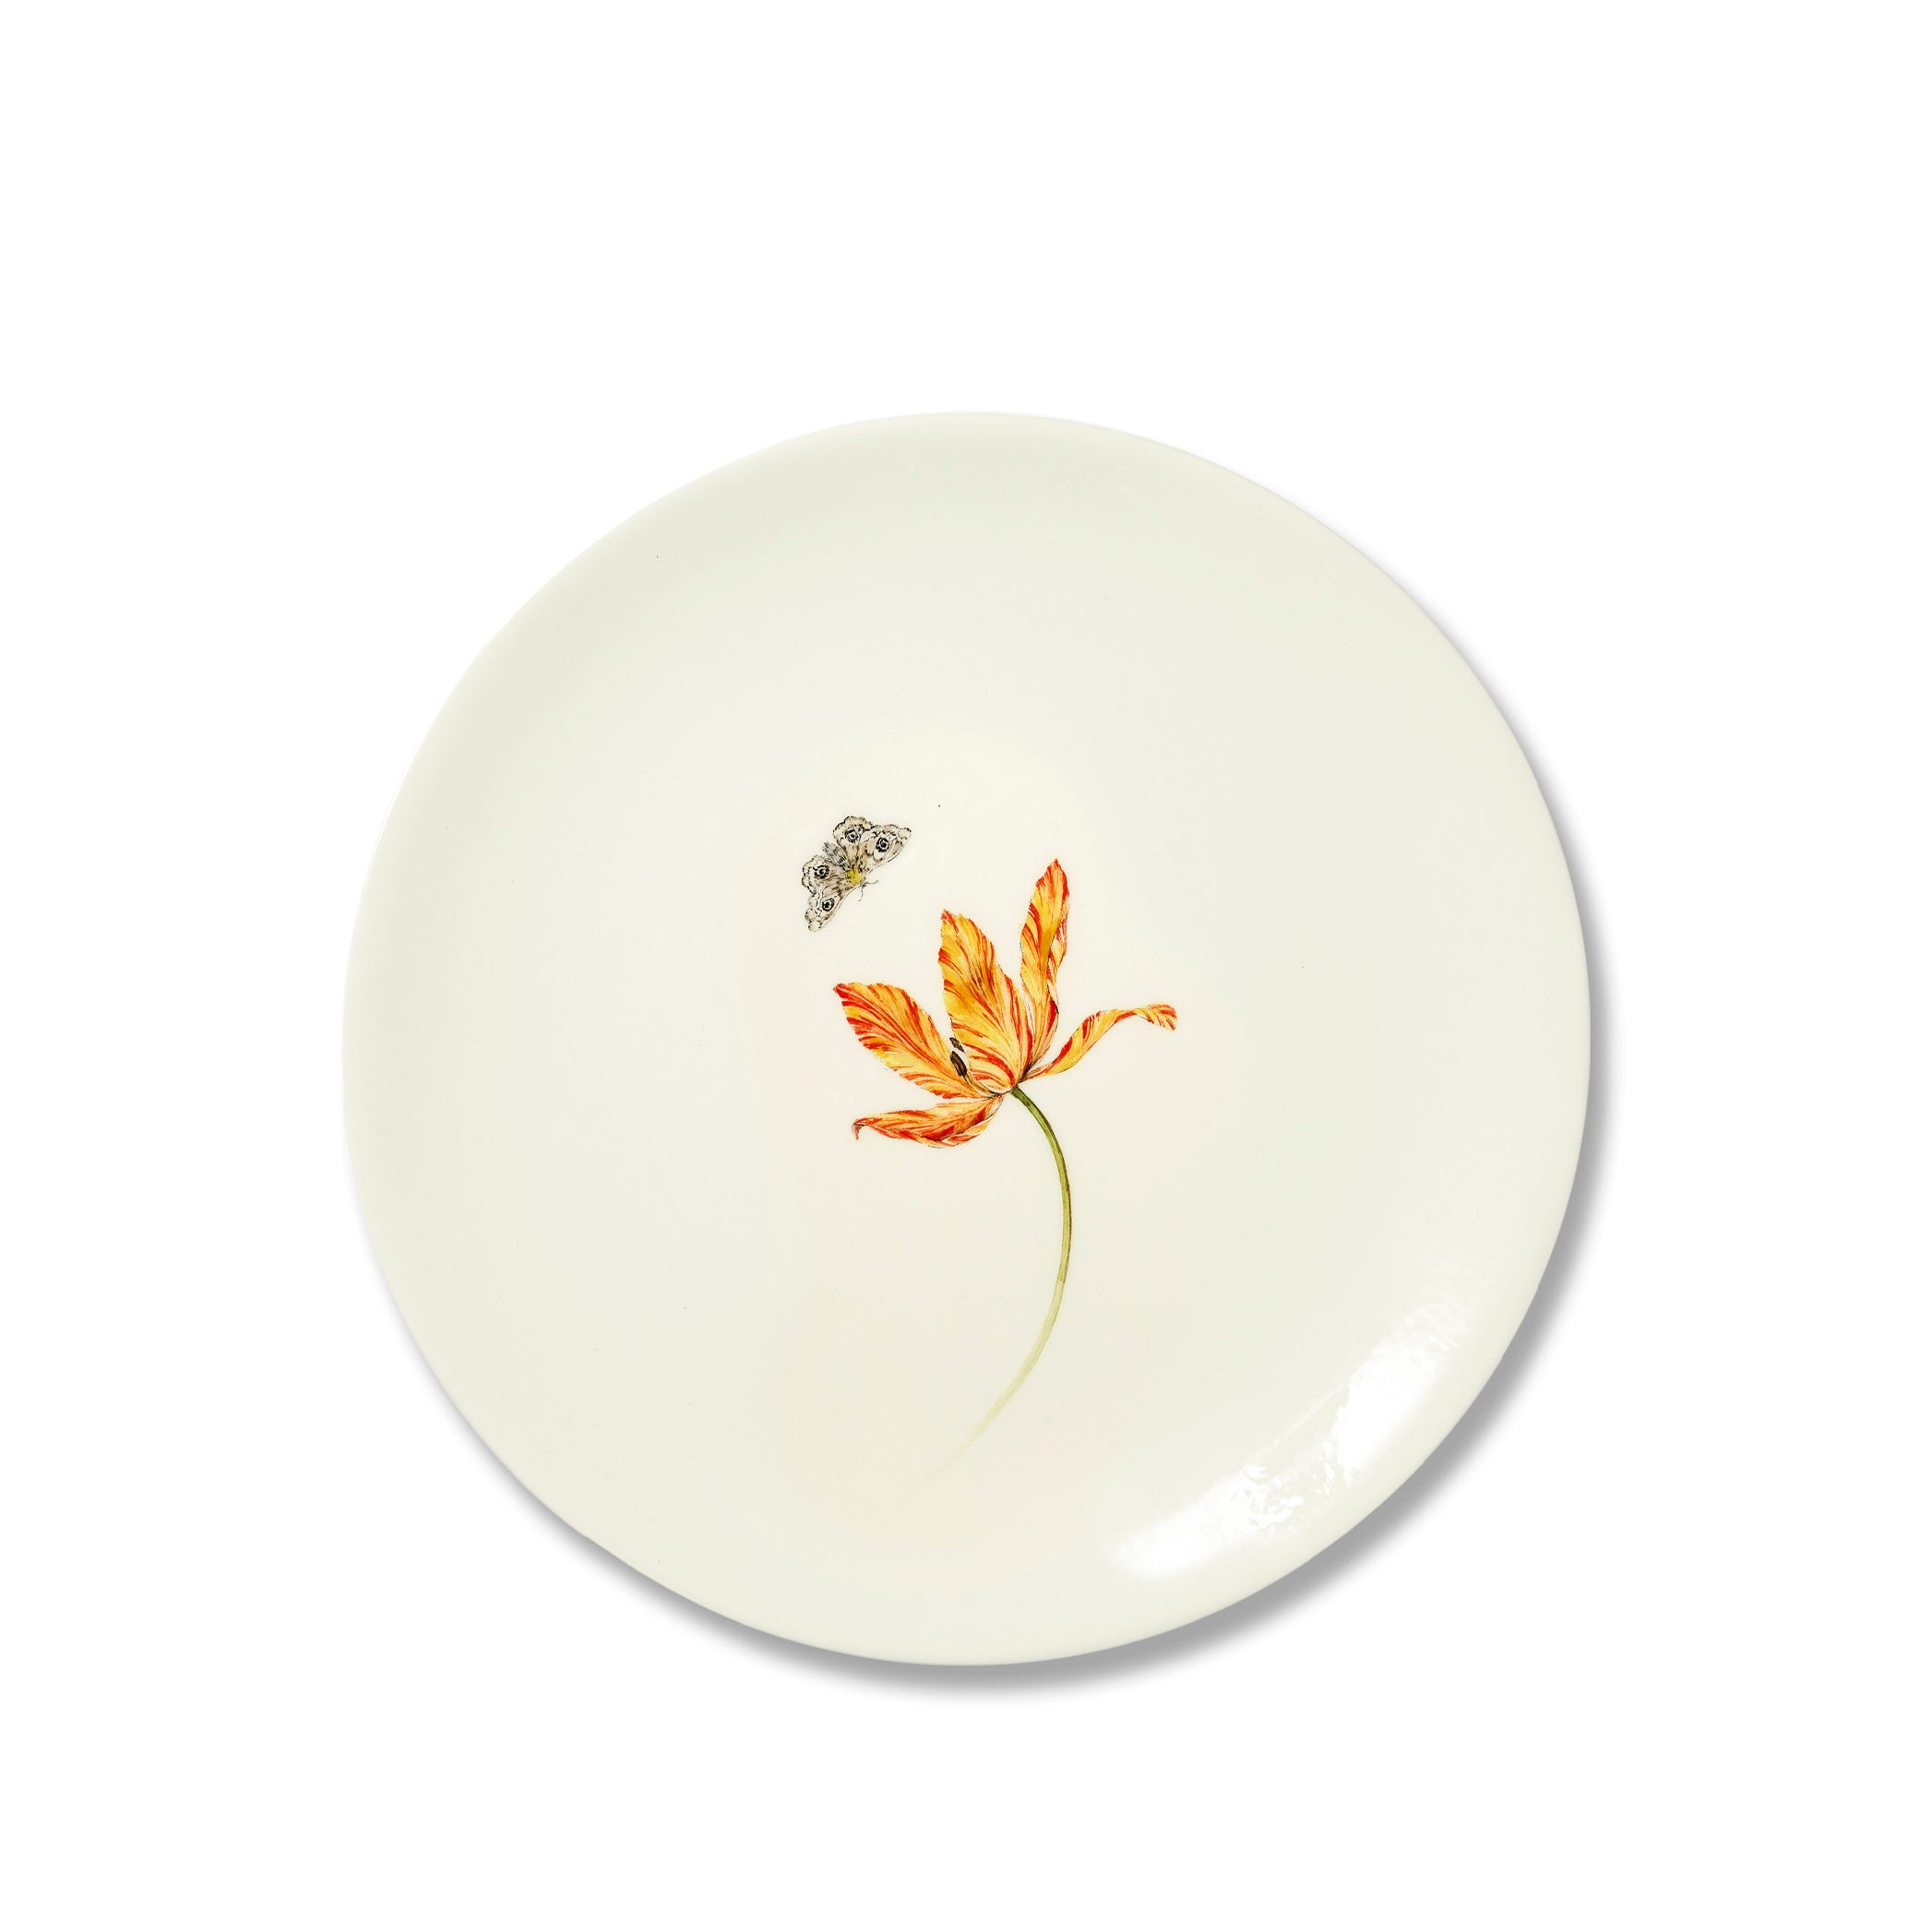 Bloom Tulipae Variae Dinner Plate, 25cm